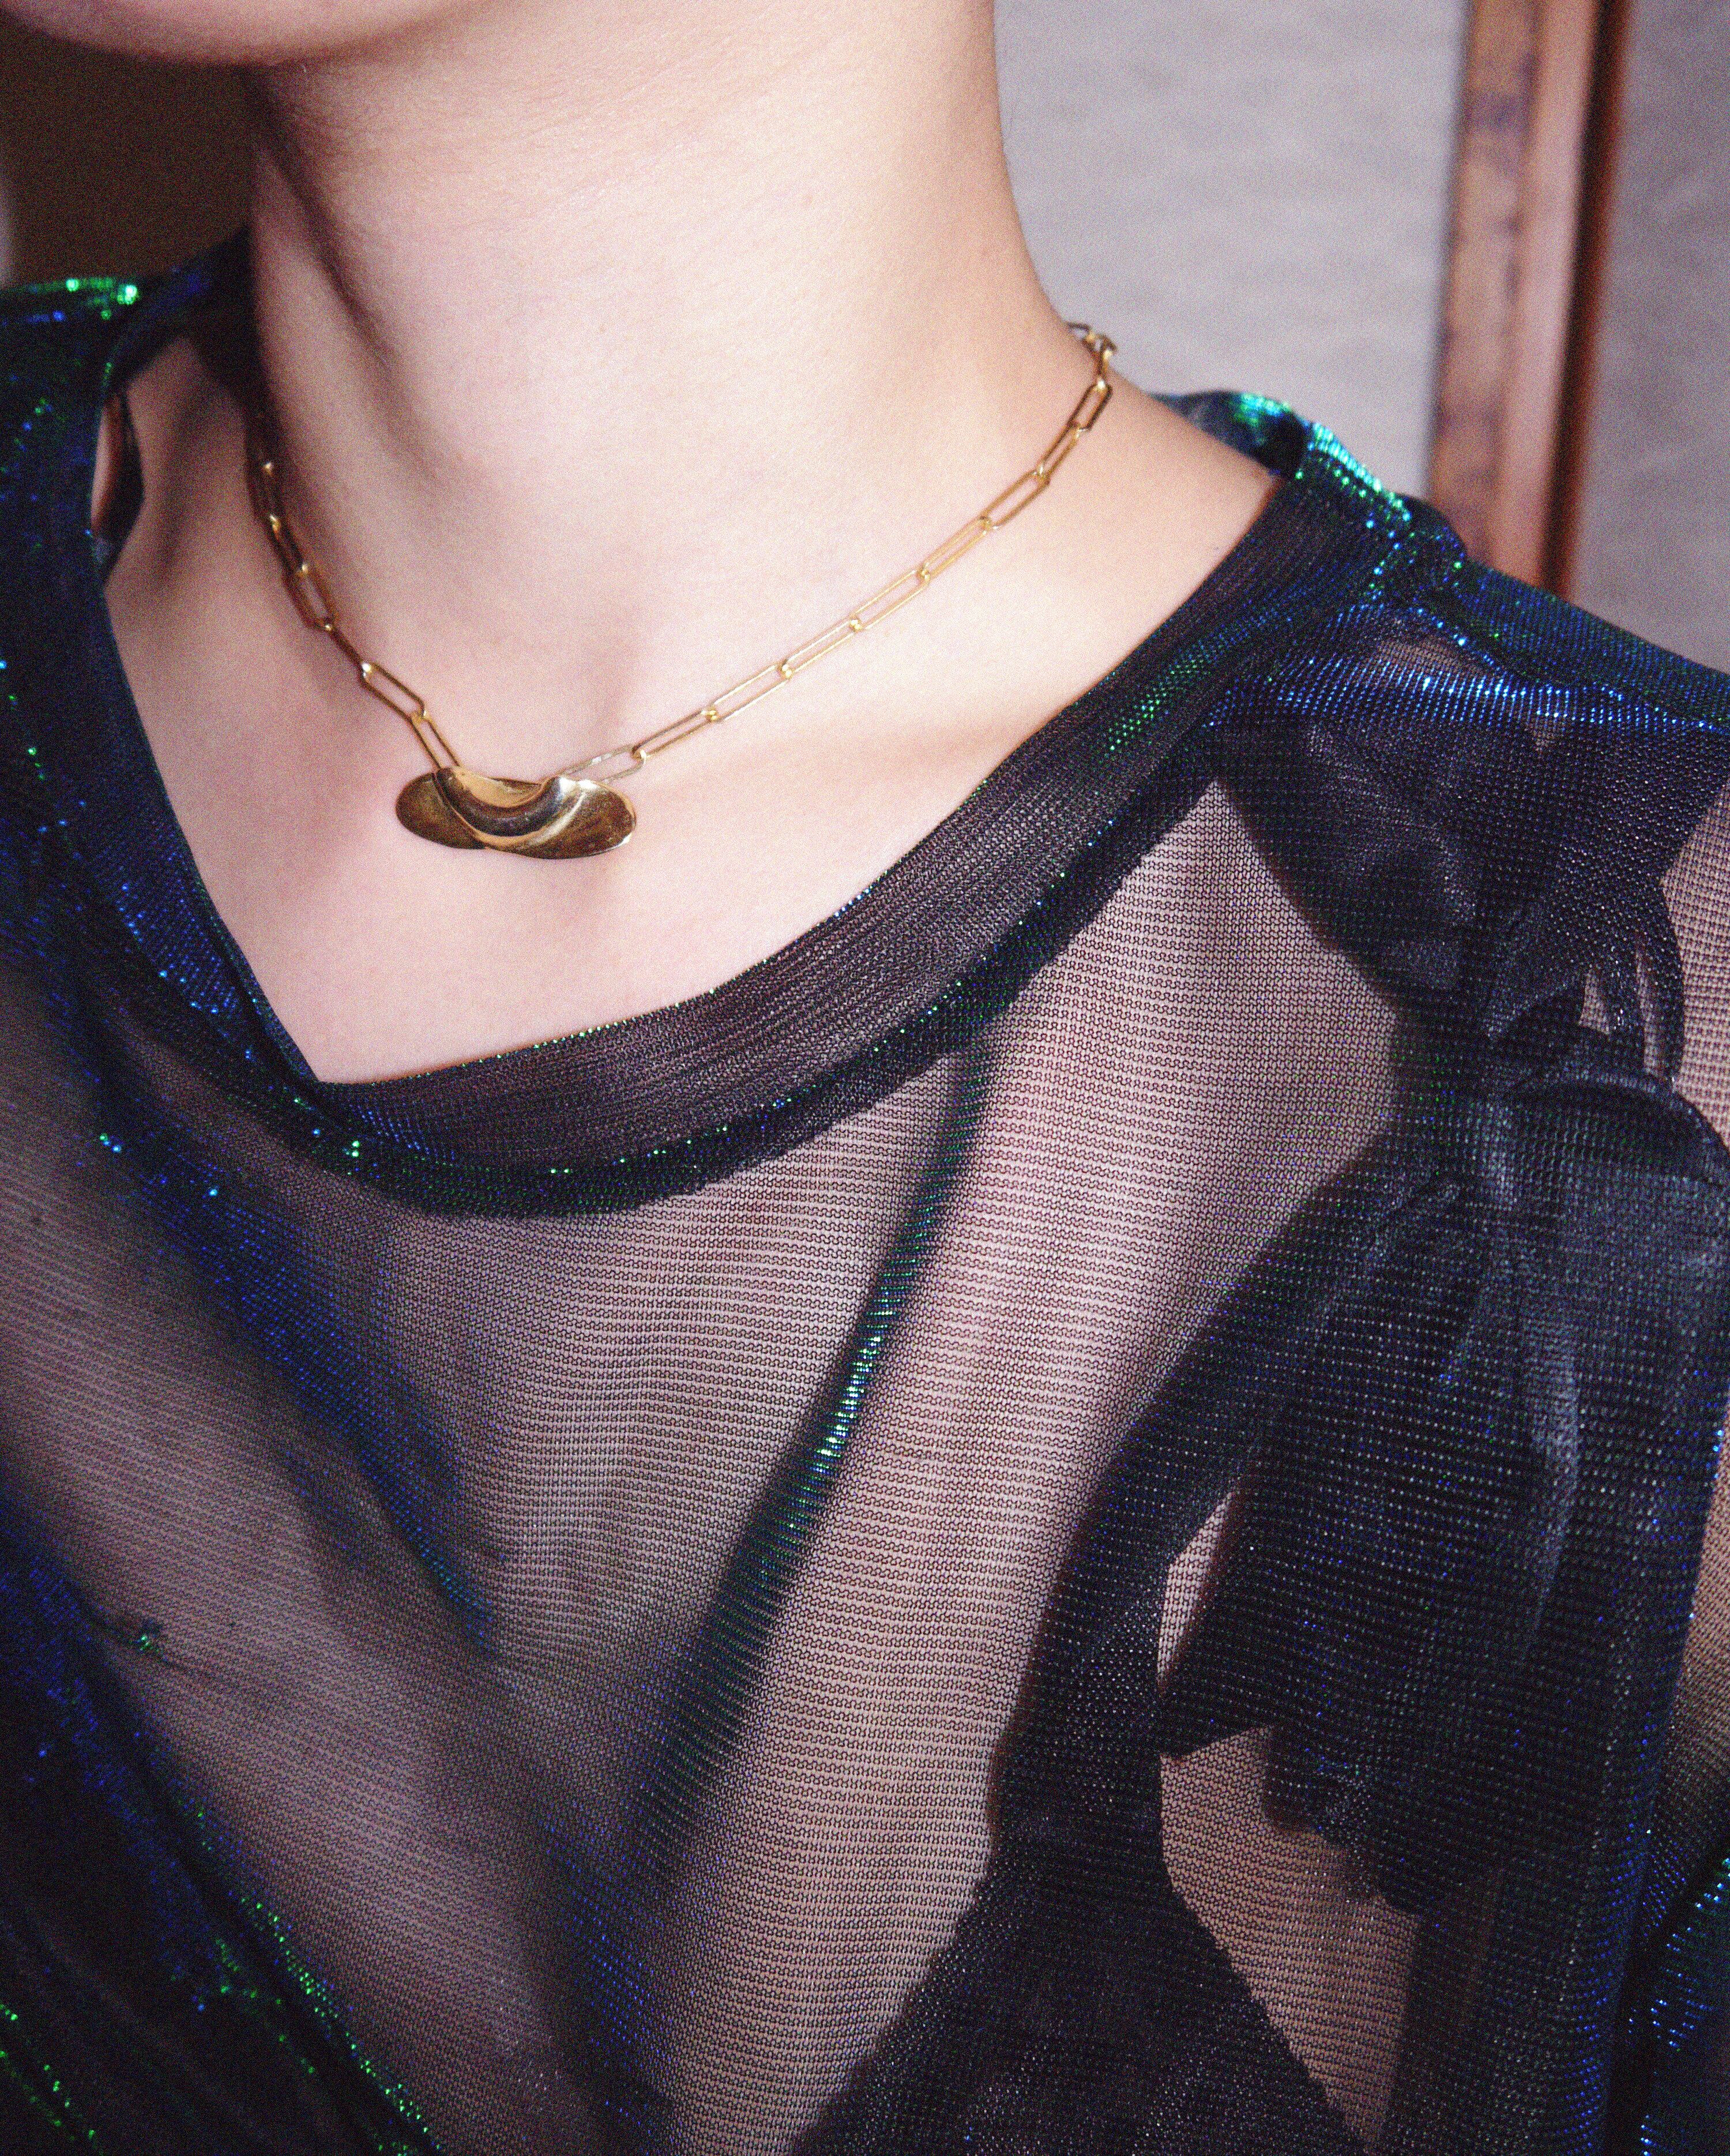 VUN-08 "DRAPE" necklace